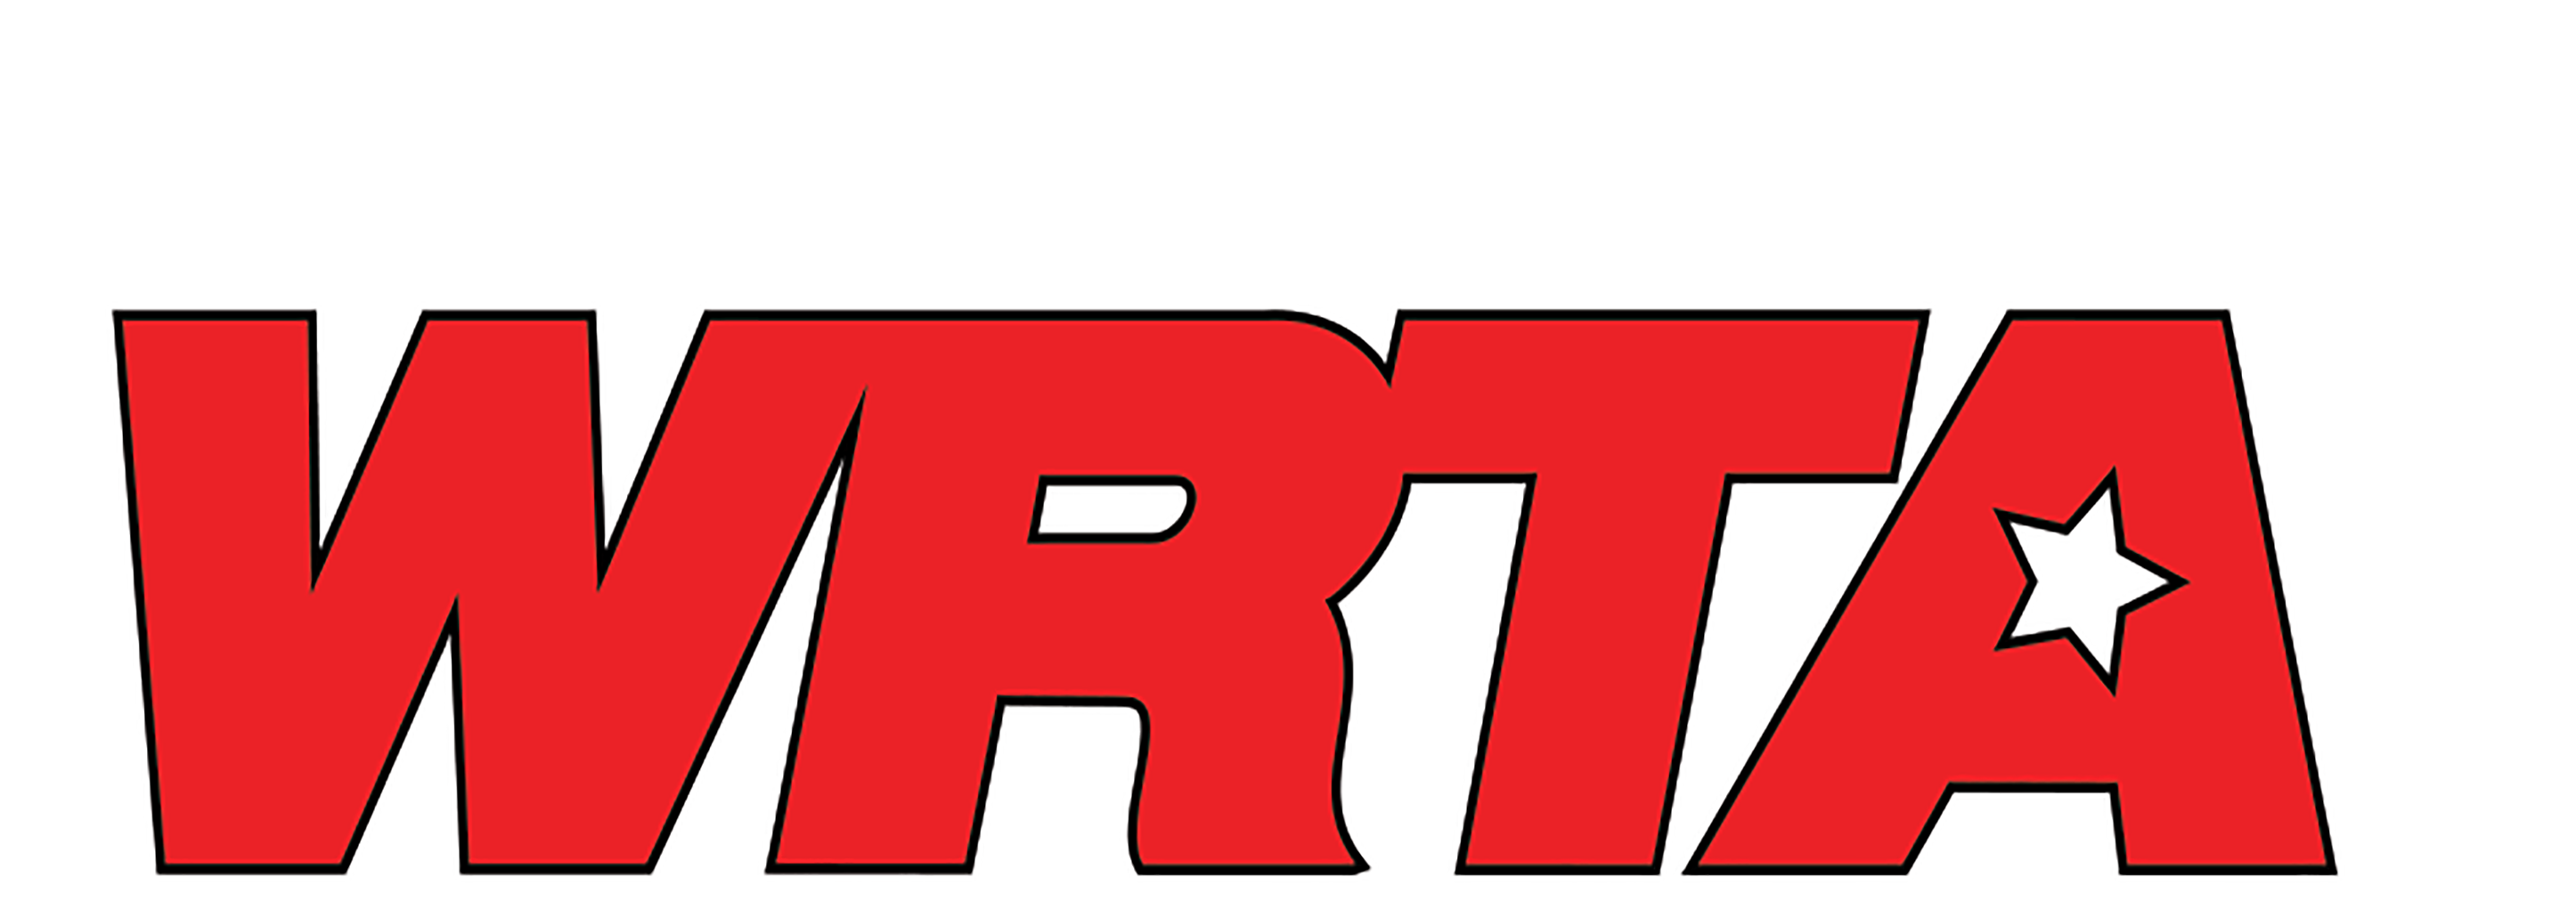 Talk Radio 98.5 WRTA